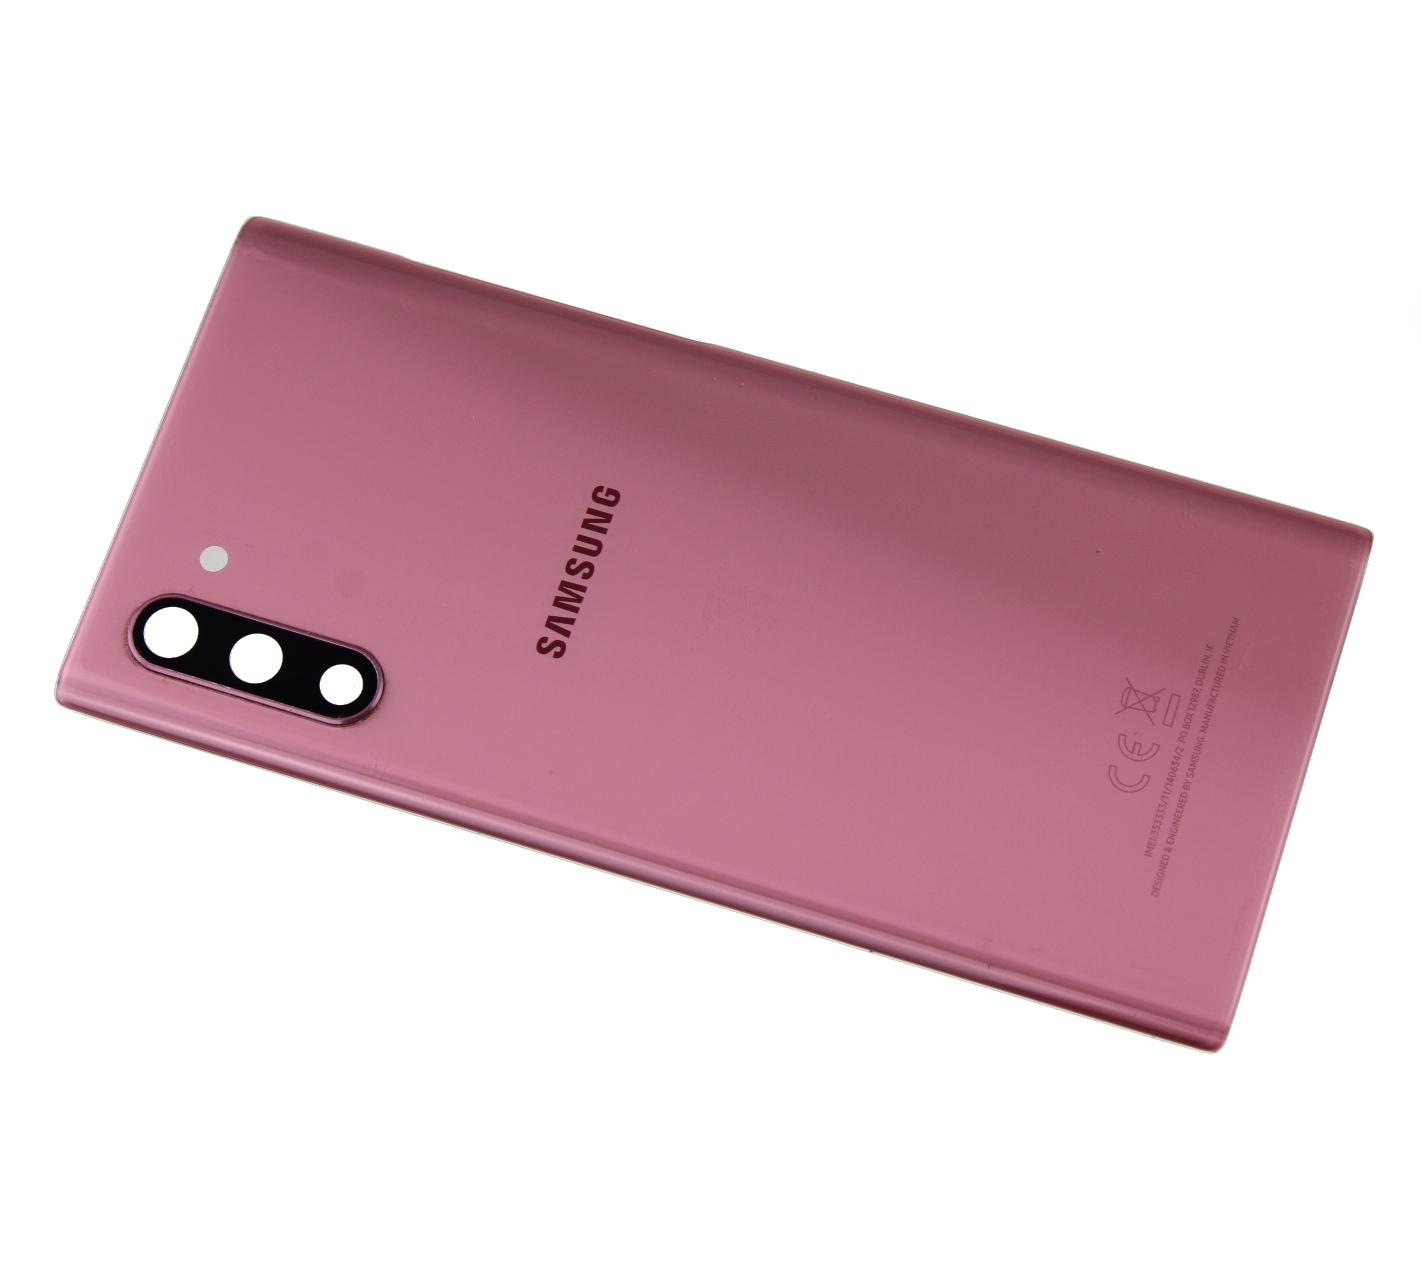 Originál kryt baterie Samsung Galaxy Note 10 SM-N970 růžový - demontovaný díl Grade A